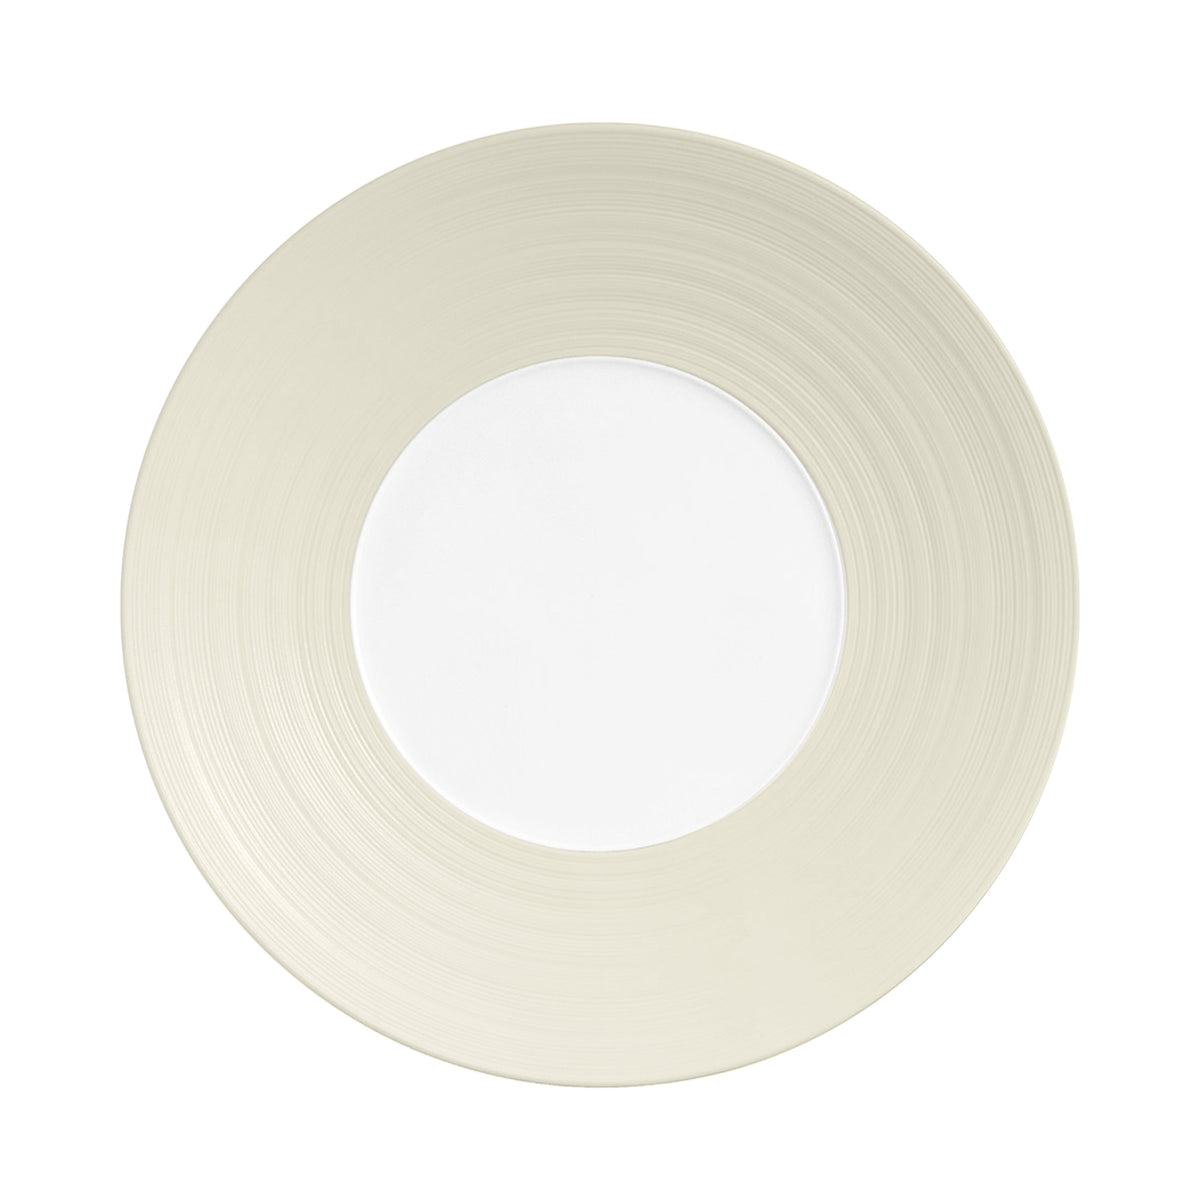 HEMISPHERE Vanilla - 29 cm plate